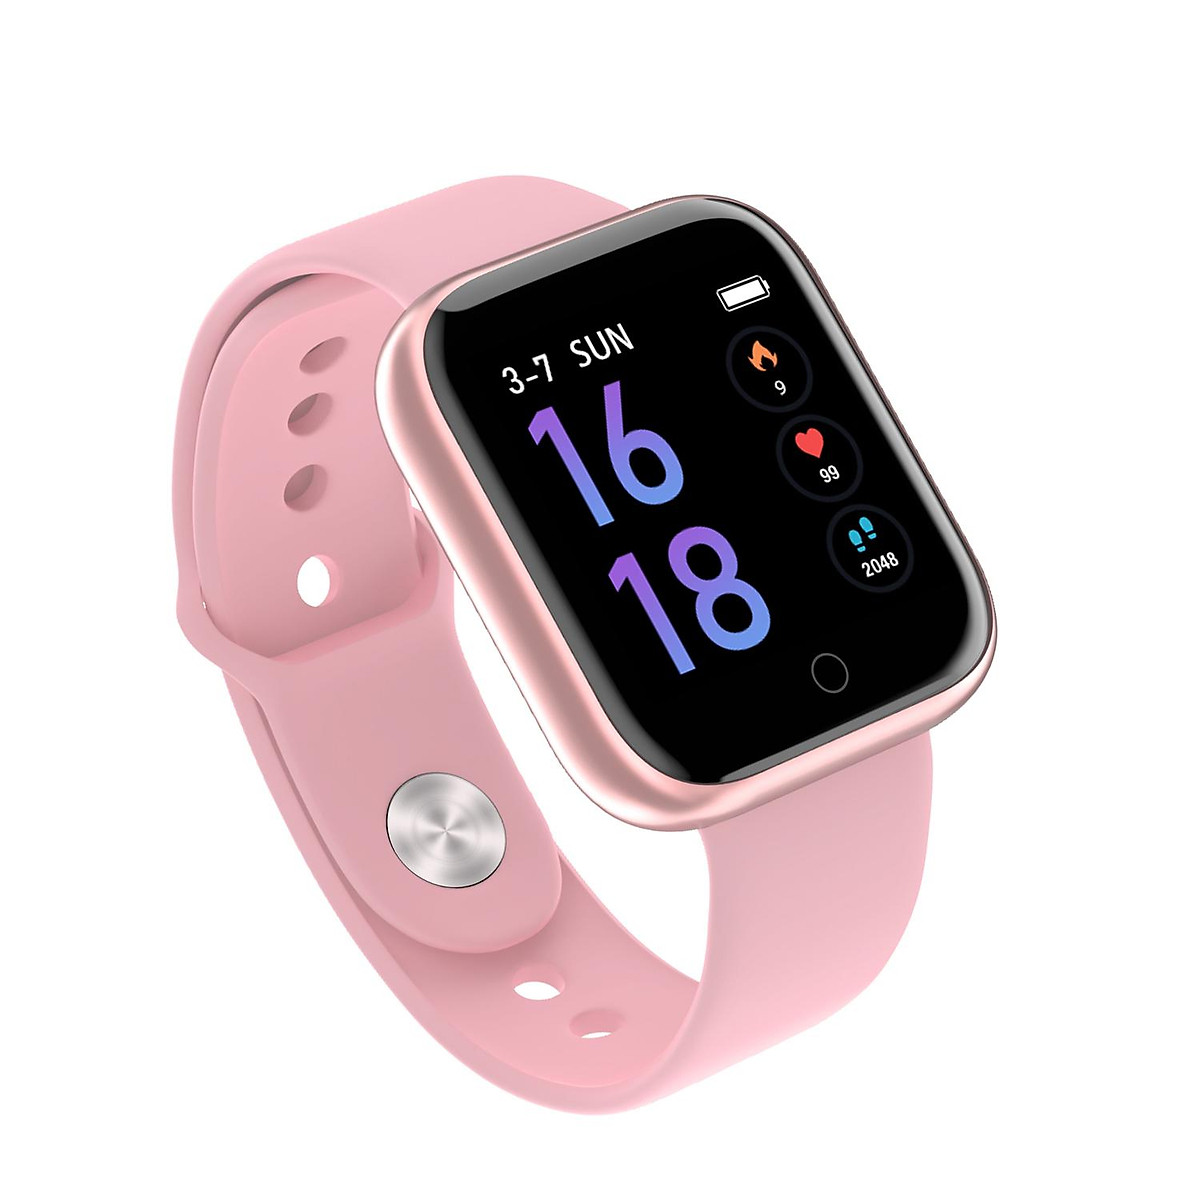 Nên mua đồng hồ thông minh màu hồng cho ai?